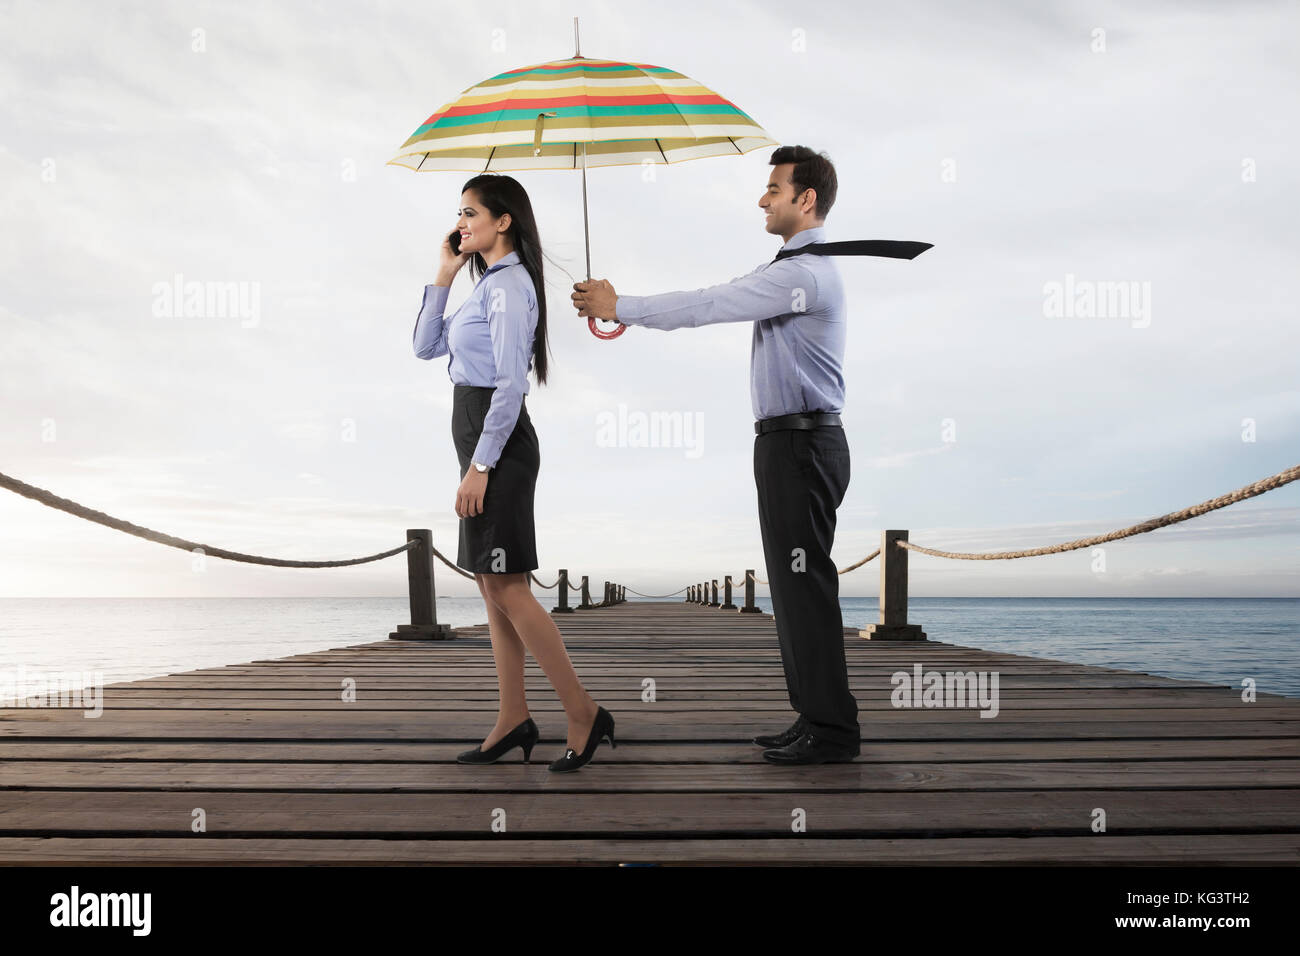 Businessman holding umbrella pour femme sur boardwalk over sea Banque D'Images